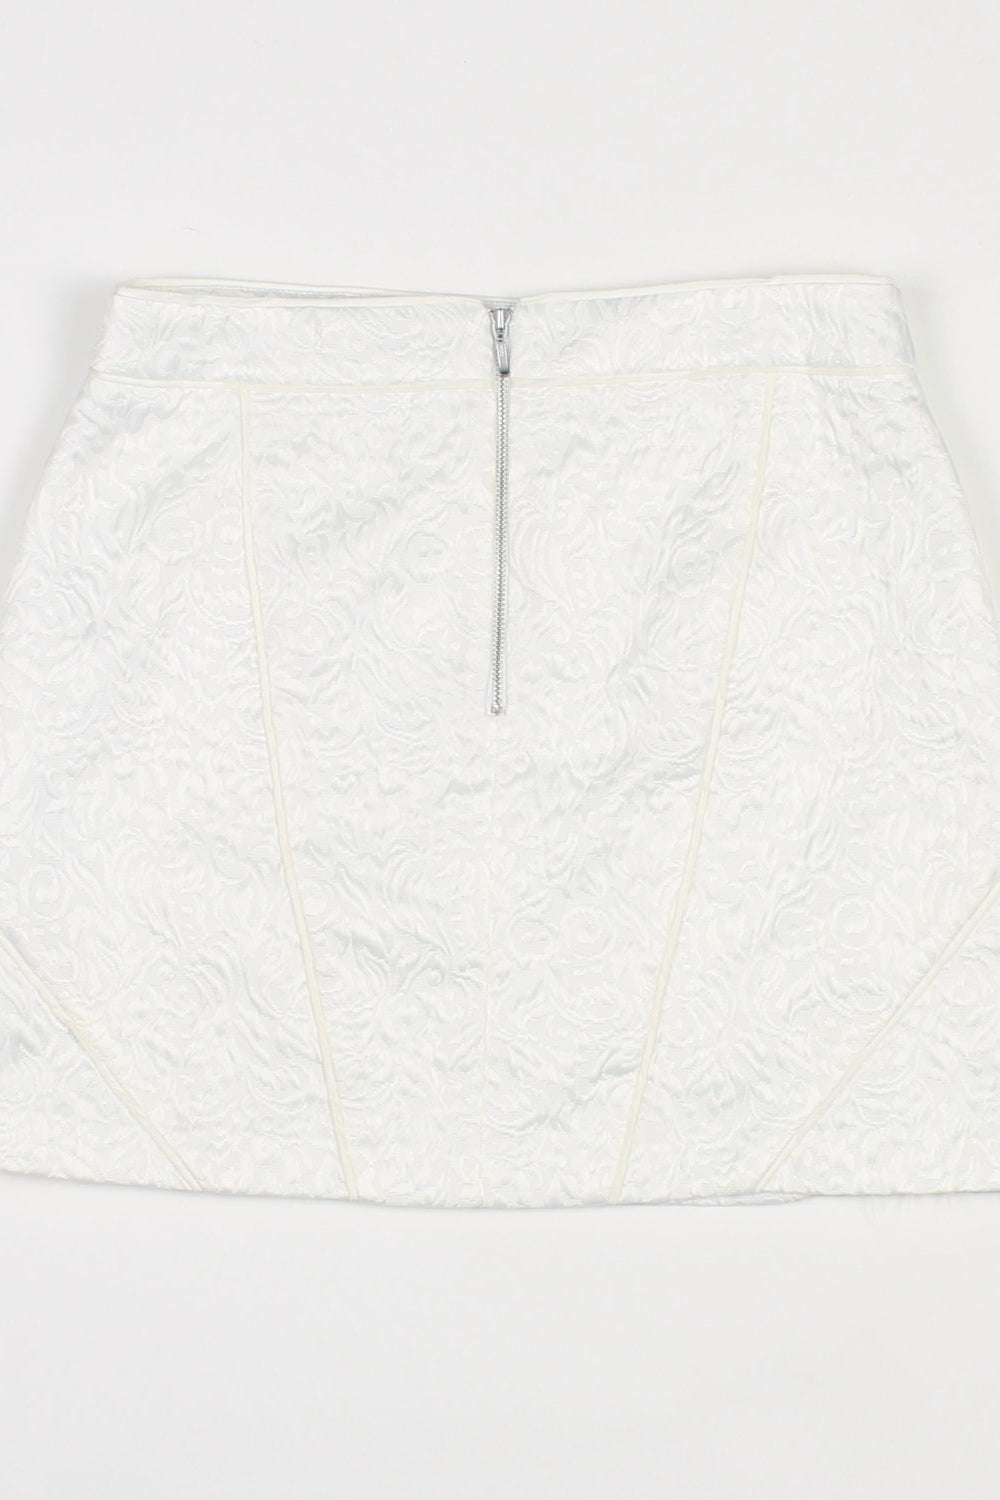 Forever New White Patterned Textured Mini Skirt 12